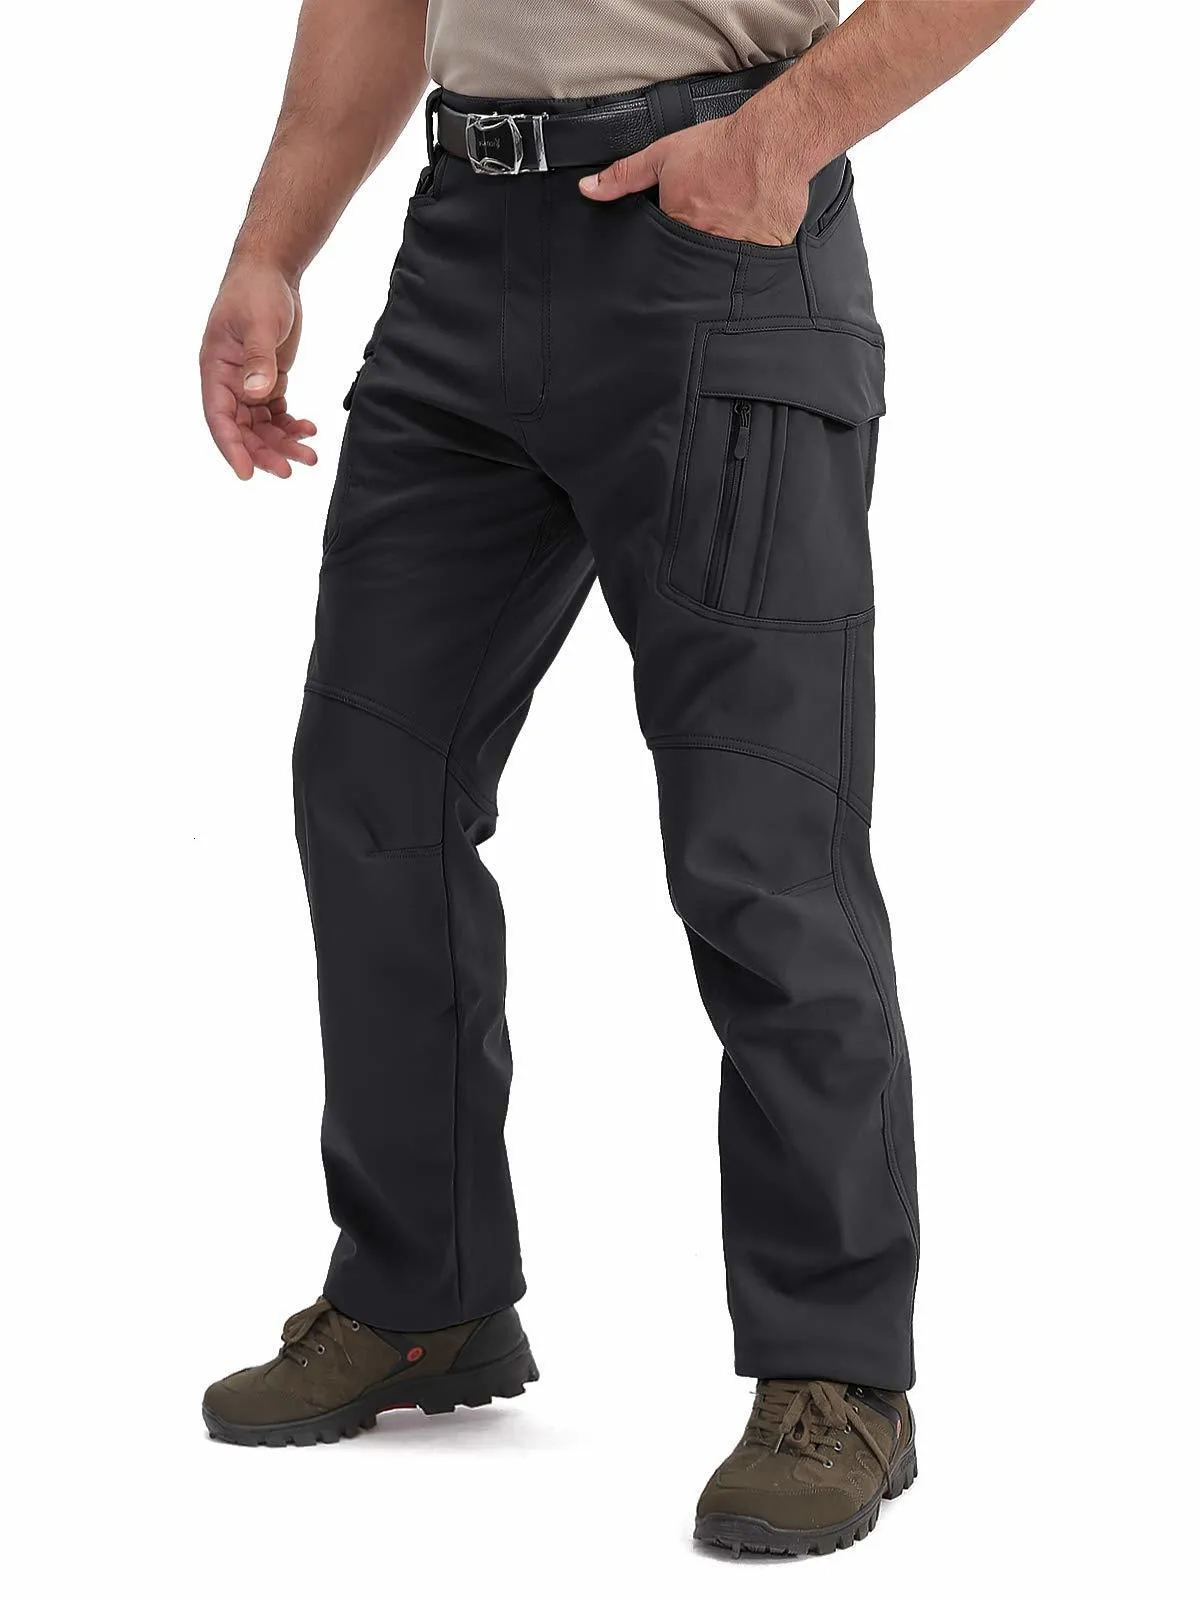 Tactical Pants For Men | Tactical Waterproof Pants | Hardland Tactical Cargo  Pants | Tactical pants, Ripstop pants, Tactical cargo pants